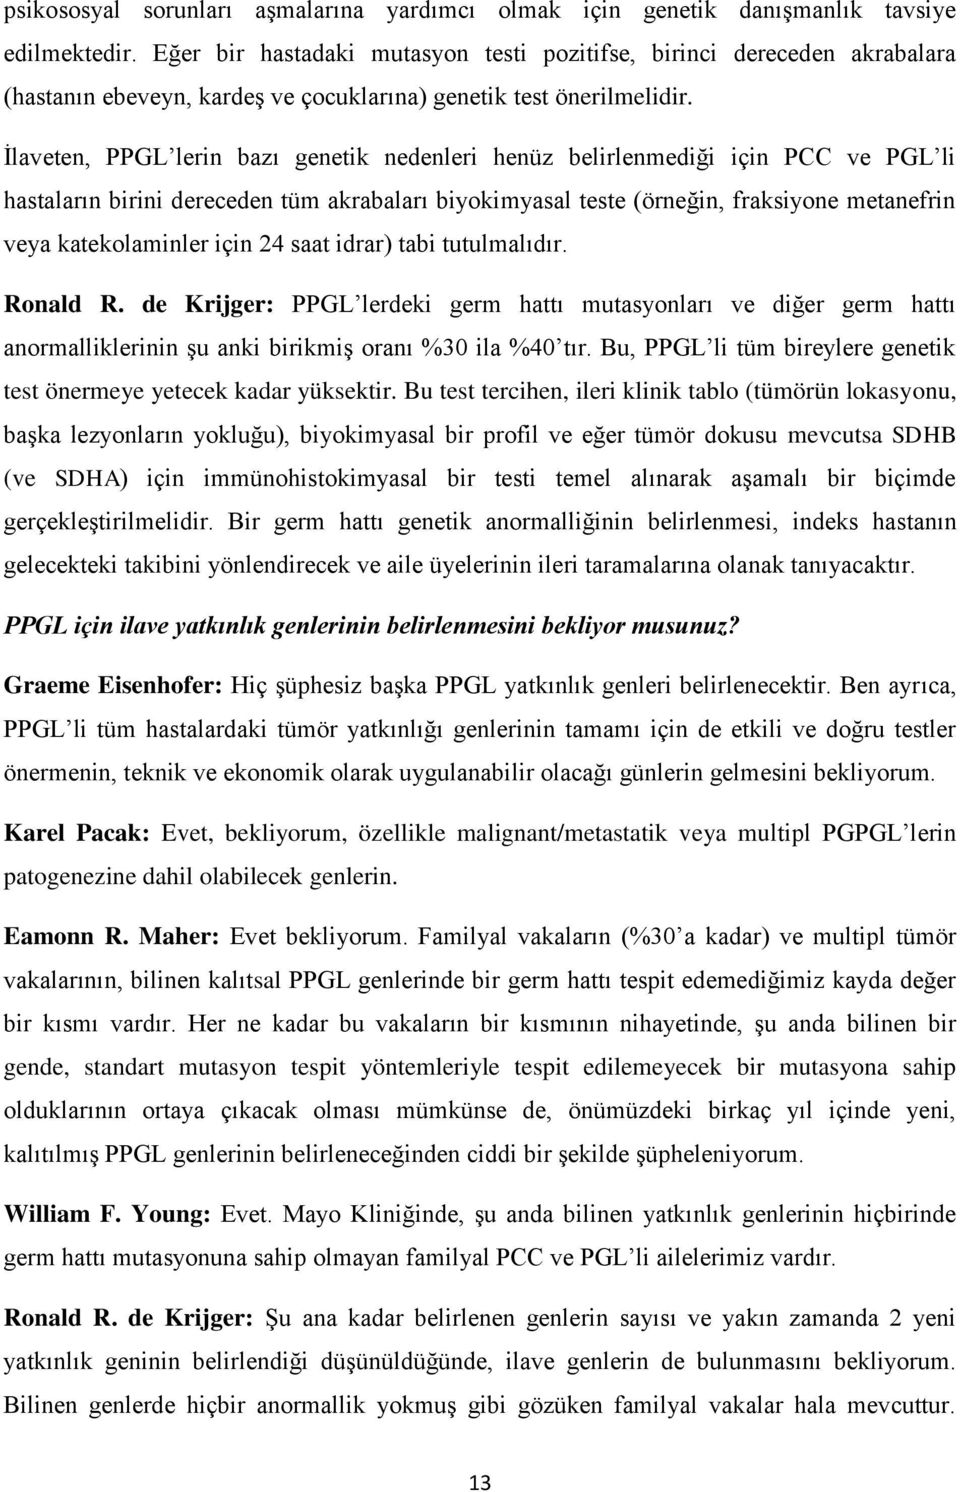 İlaveten, PPGL lerin bazı genetik nedenleri henüz belirlenmediği için PCC ve PGL li hastaların birini dereceden tüm akrabaları biyokimyasal teste (örneğin, fraksiyone metanefrin veya katekolaminler